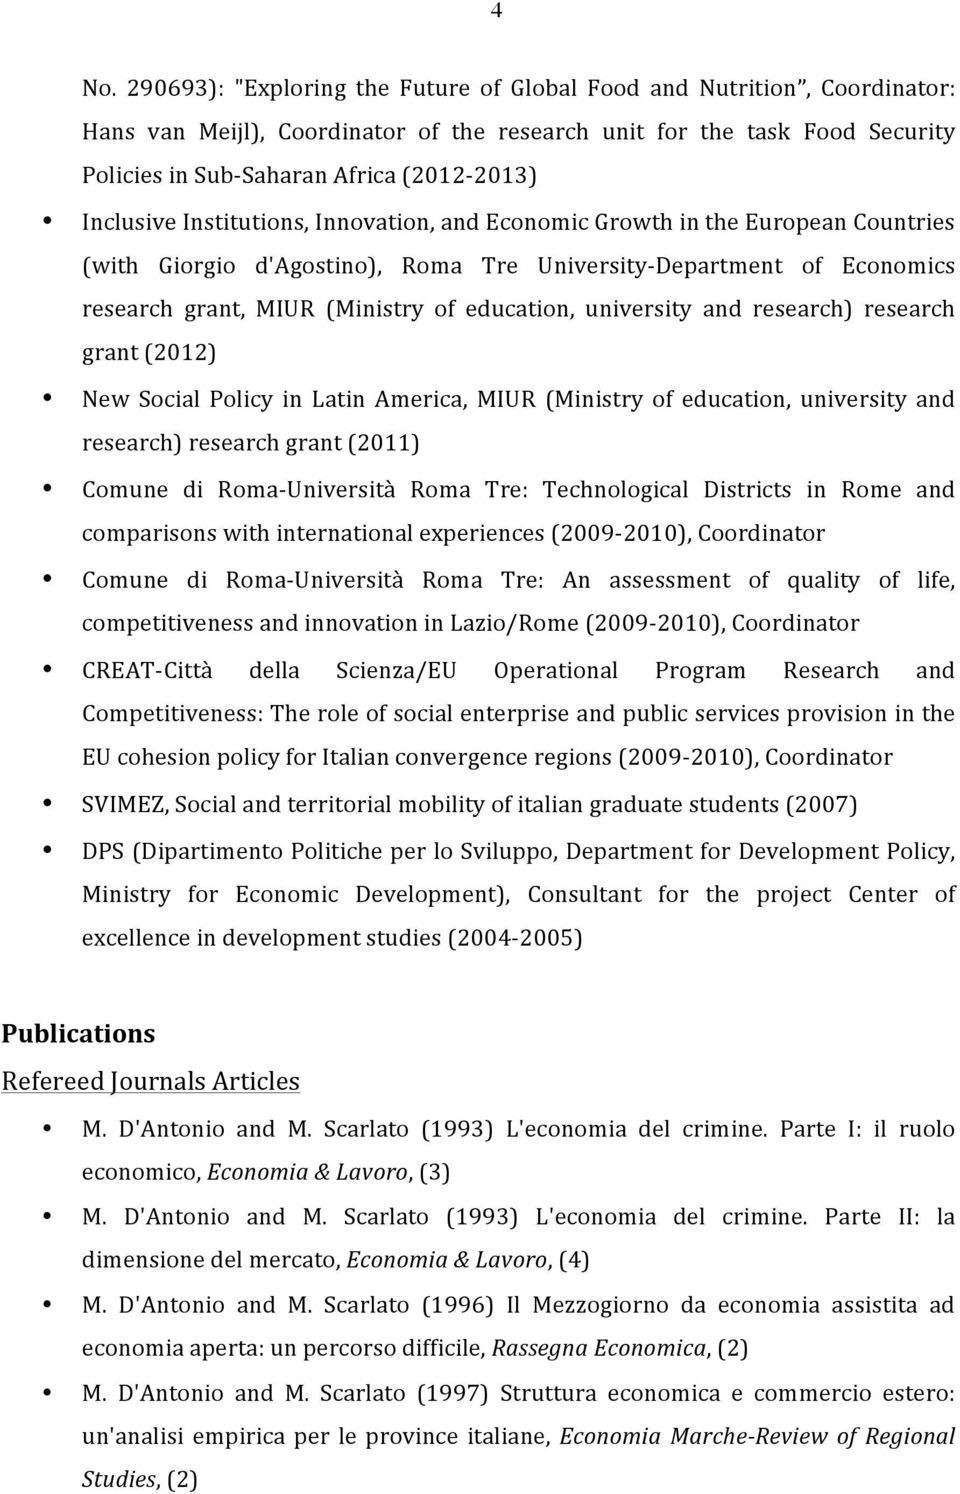 education, university and research) research grant (2012) New Social Policy in Latin America, MIUR (Ministry of education, university and research) research grant (2011) Comune di Roma- Università